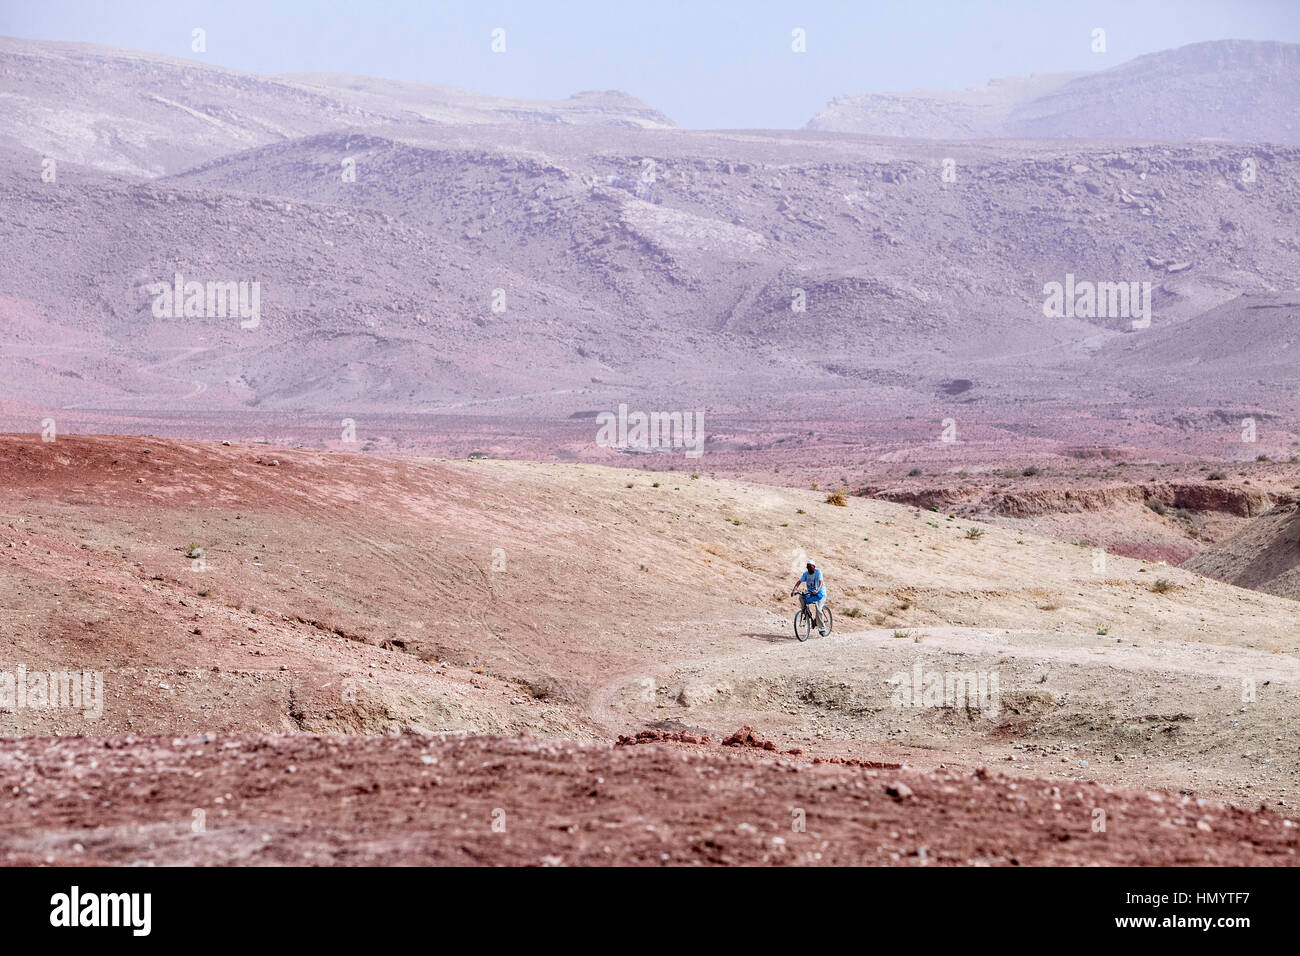 Le Maroc. Man Riding Bicycle près de Ksar Ait Benhaddou, un site du patrimoine mondial. Banque D'Images